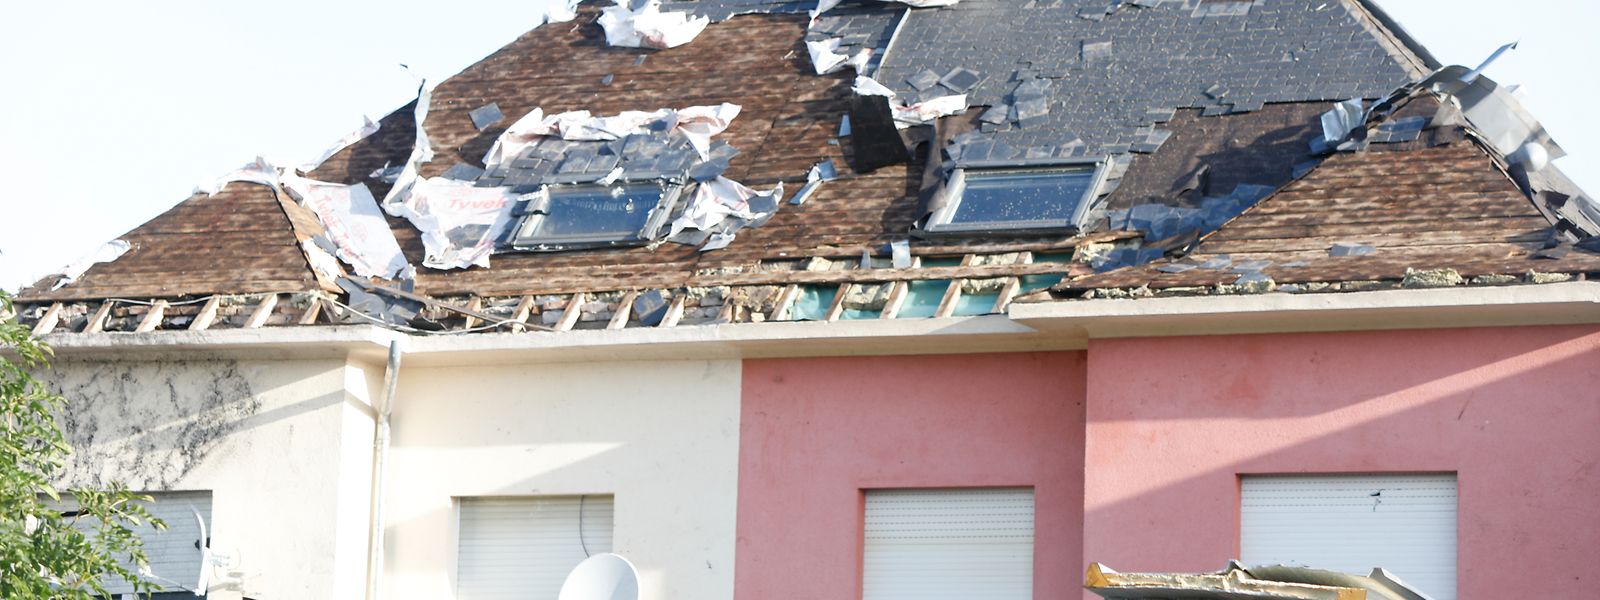 Viele Häuser sind nach dem Tornado unbewohnbar.